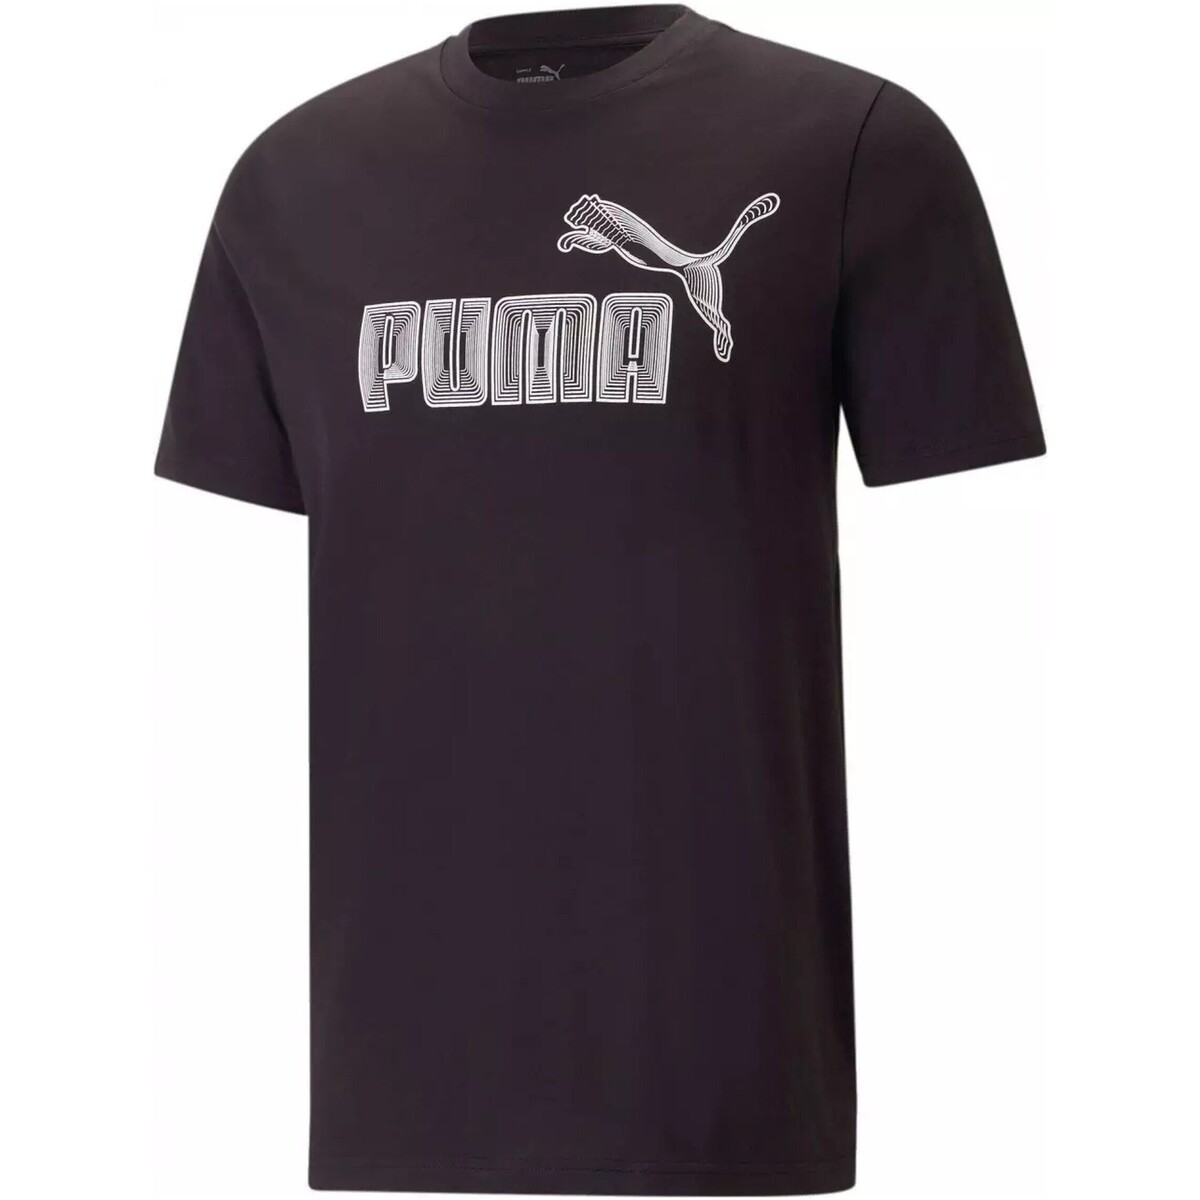 tekstylia Męskie T-shirty z krótkim rękawem Puma  Czarny